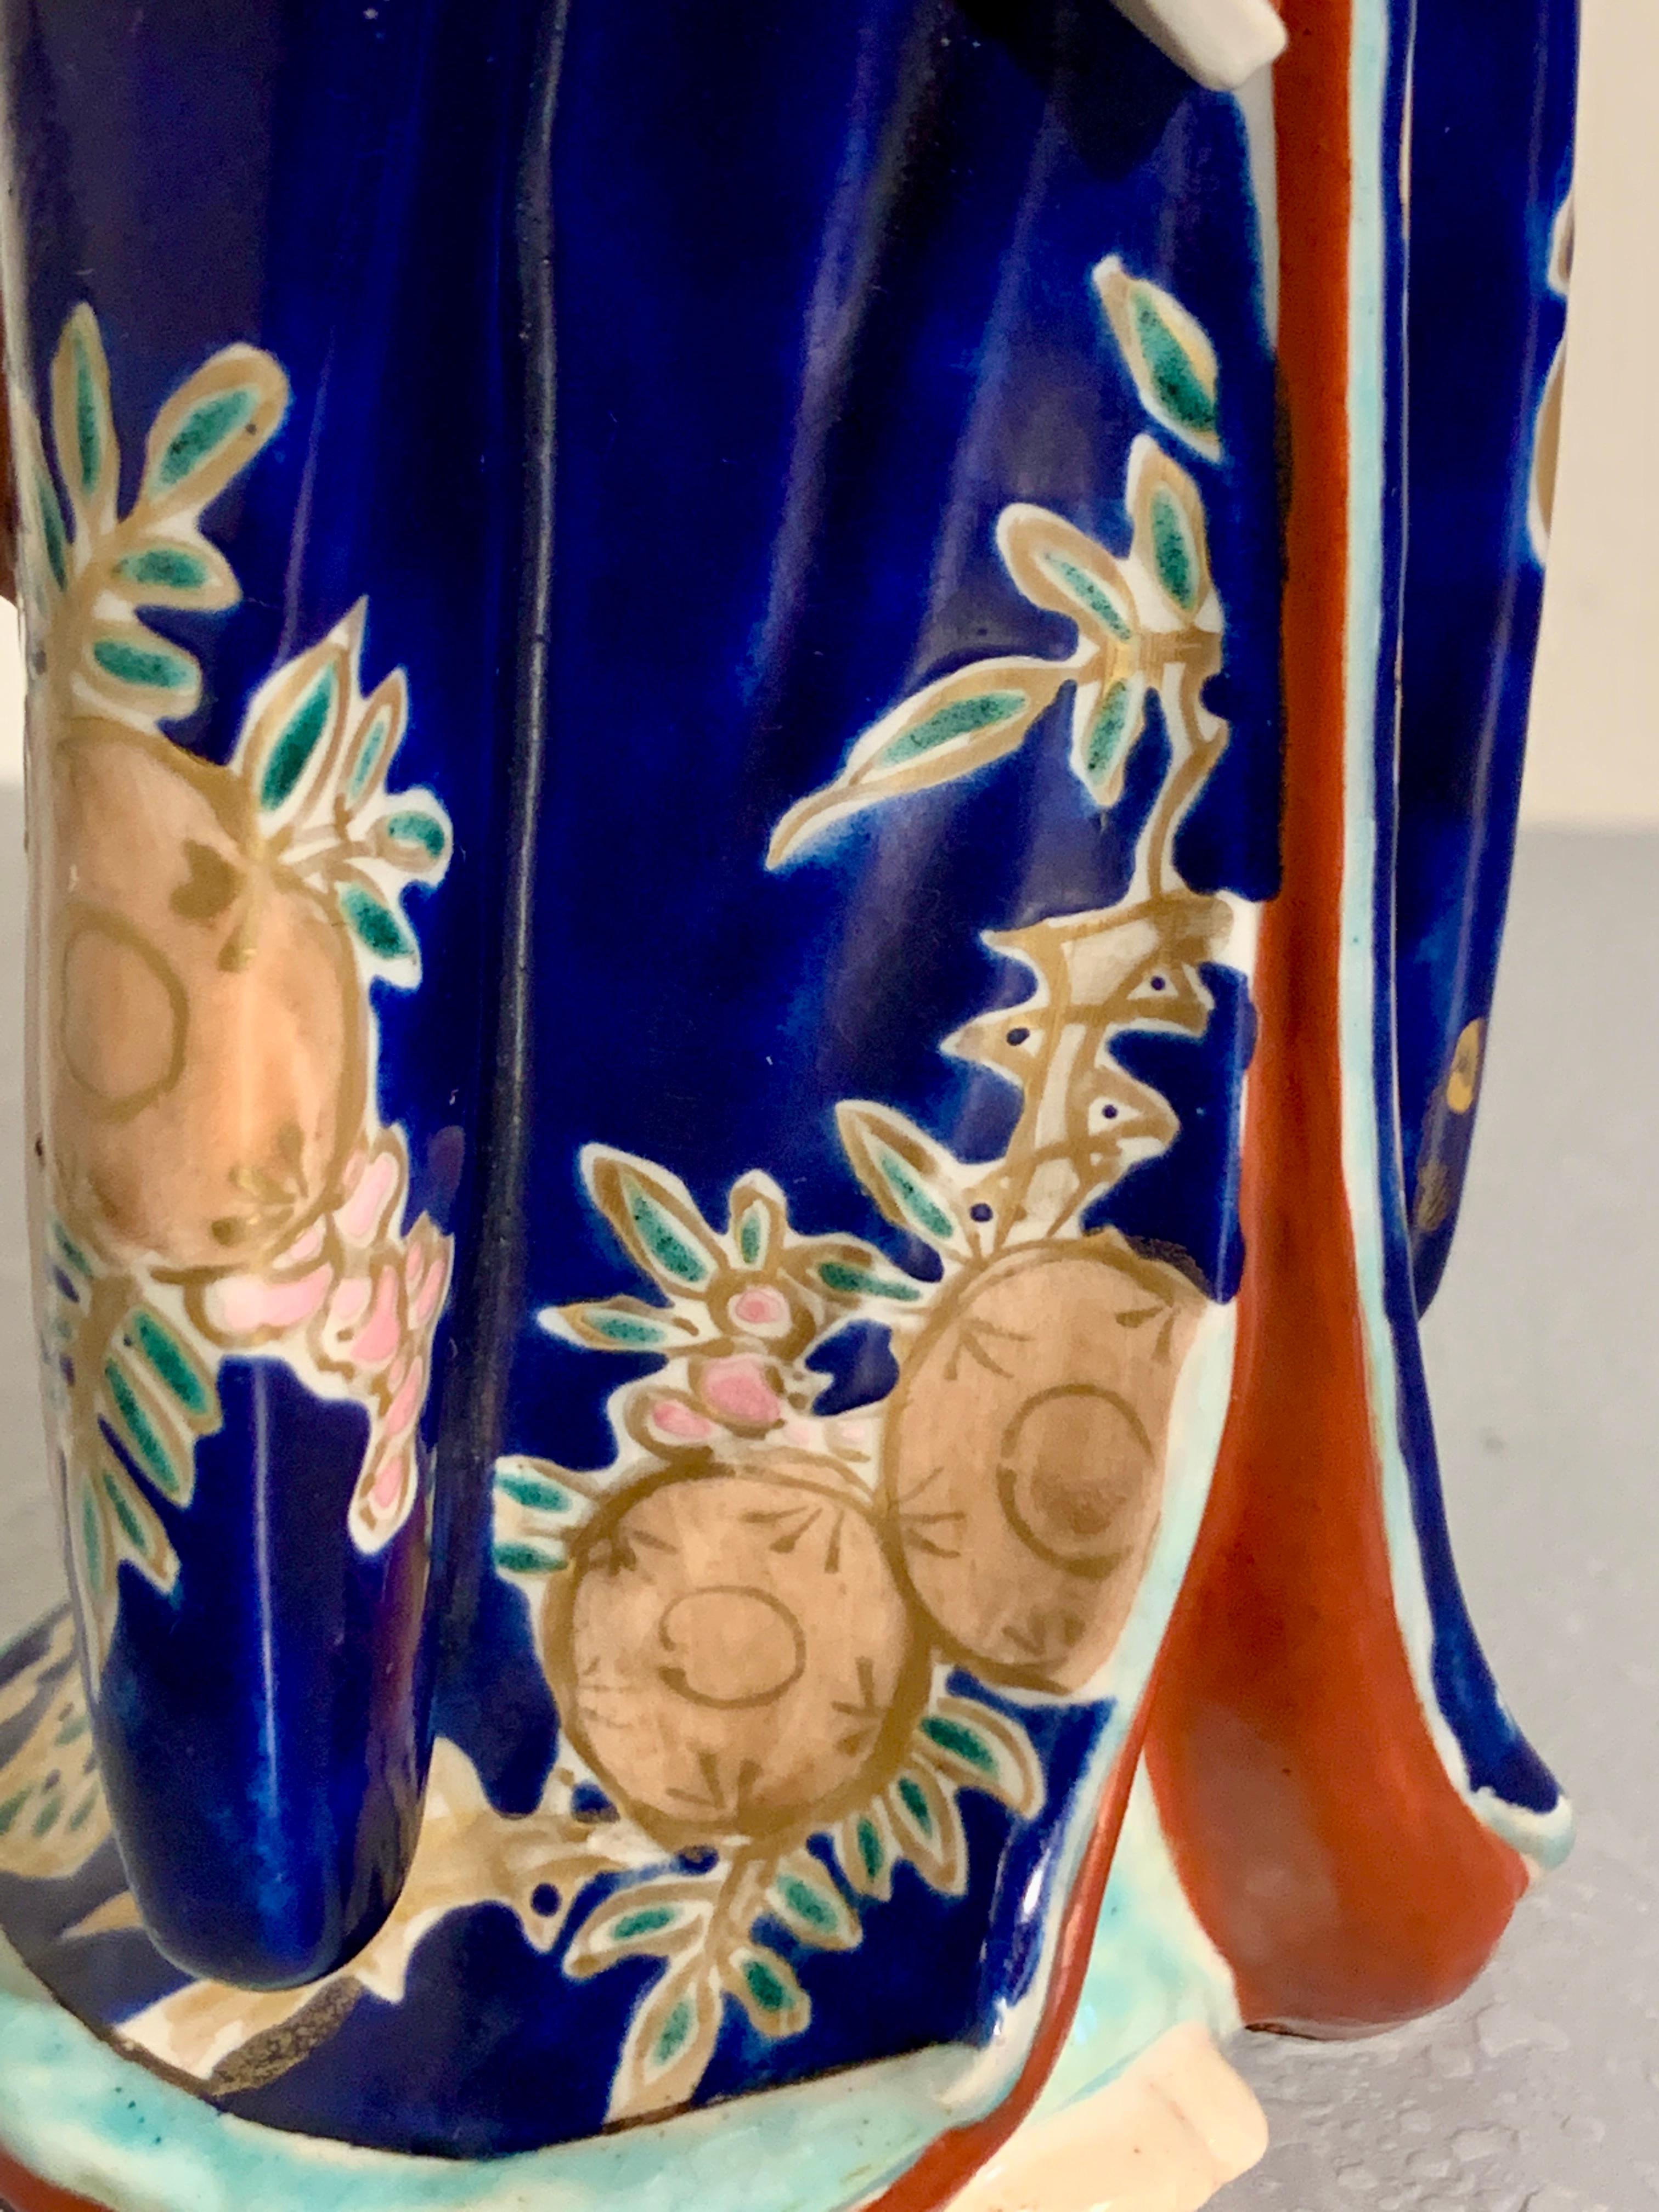 Ein schönes Kutani-Porzellanmodell einer schönen Frau, Bijin, oder vielleicht einer Geisha, Showa-Ära, ca. 1930er Jahre, Japan.

Eine charmante und reizvolle japanische Kutani emaillierte Porzellanfigur einer Bijin oder Geisha, frühe Showa-Ära, ca.